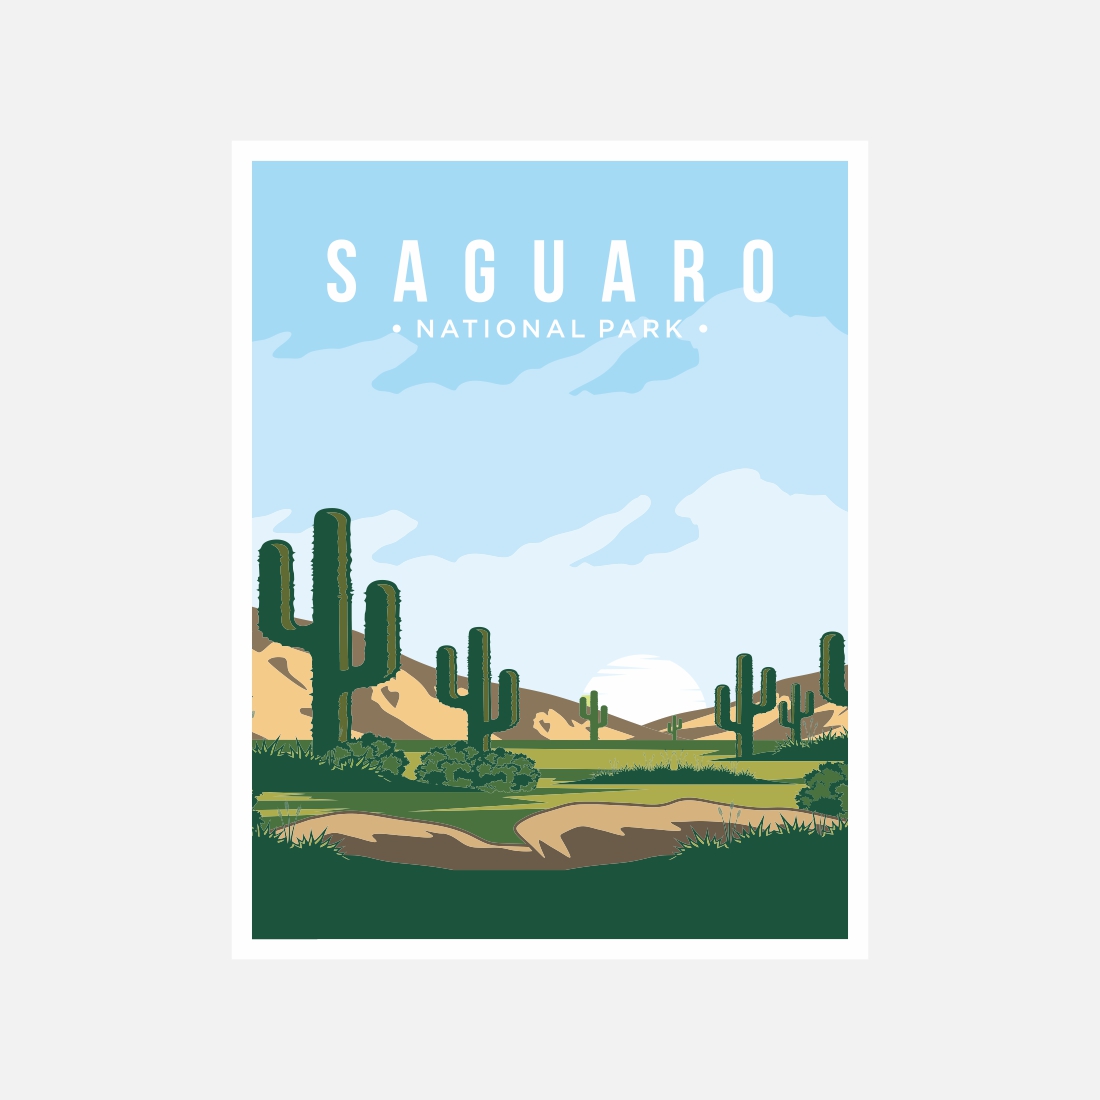 Saguaro National Park poster vector illustration design – Only $8 cover image.